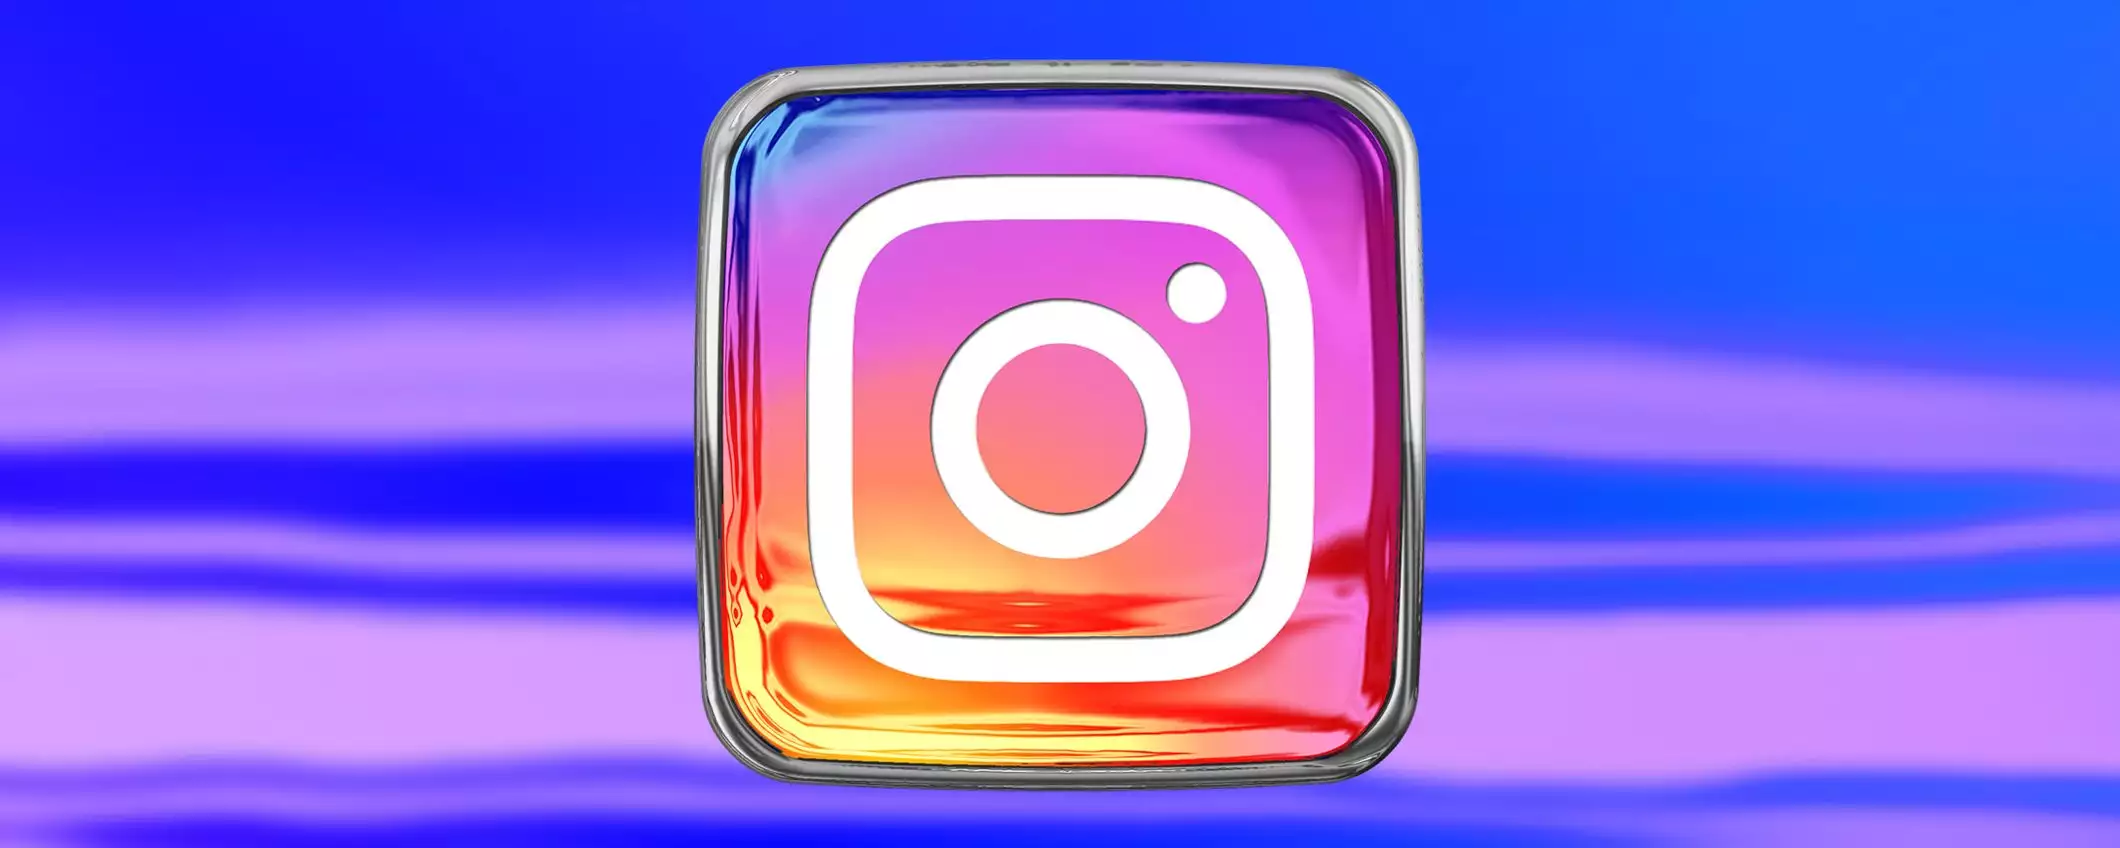 Instagram: didascalie tradotte automaticamente e pinch to zoom